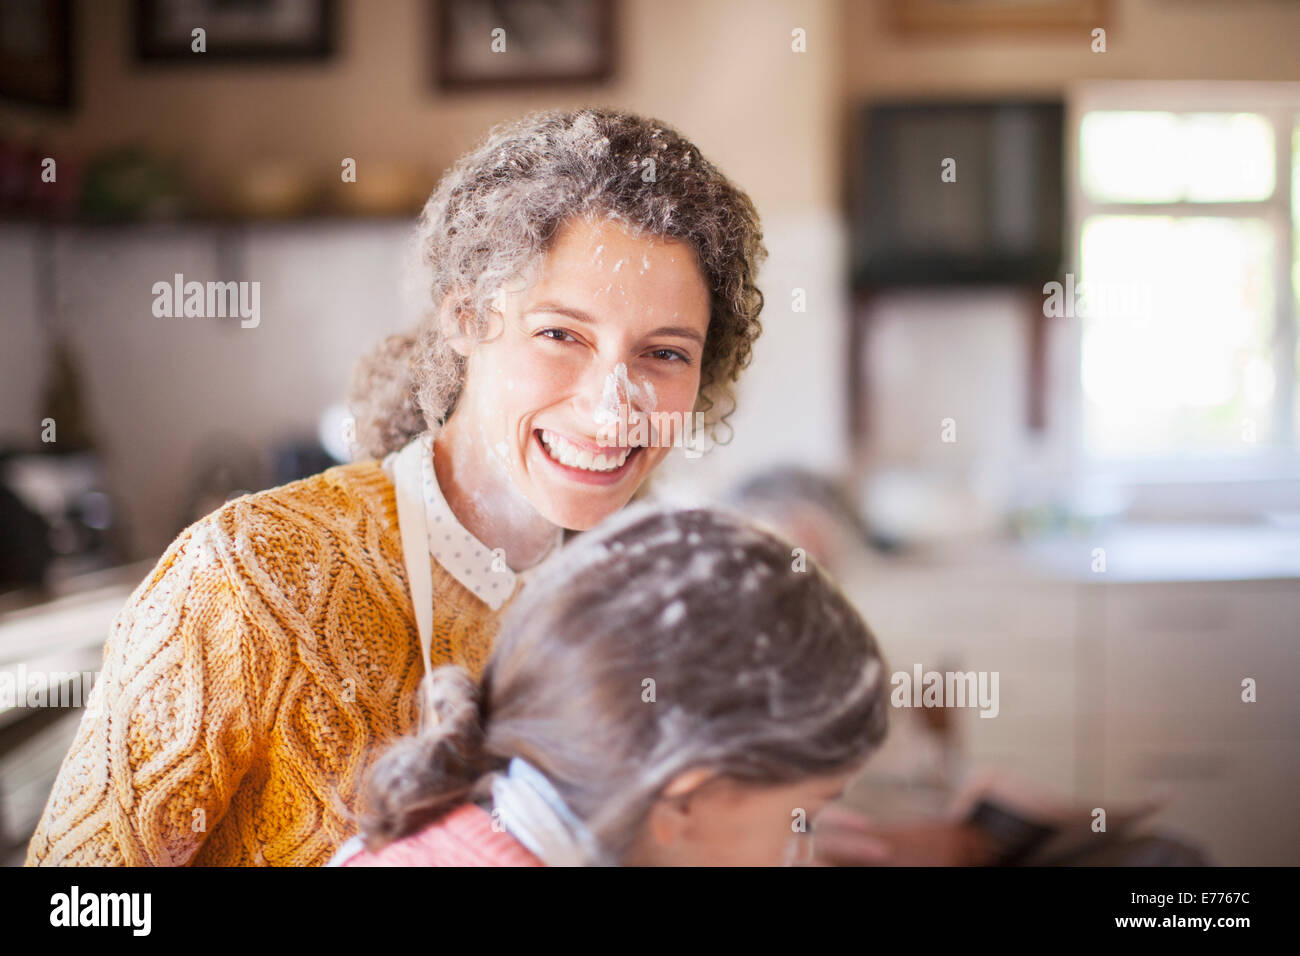 Madre e hija jugando con harina en la cocina. Foto de stock